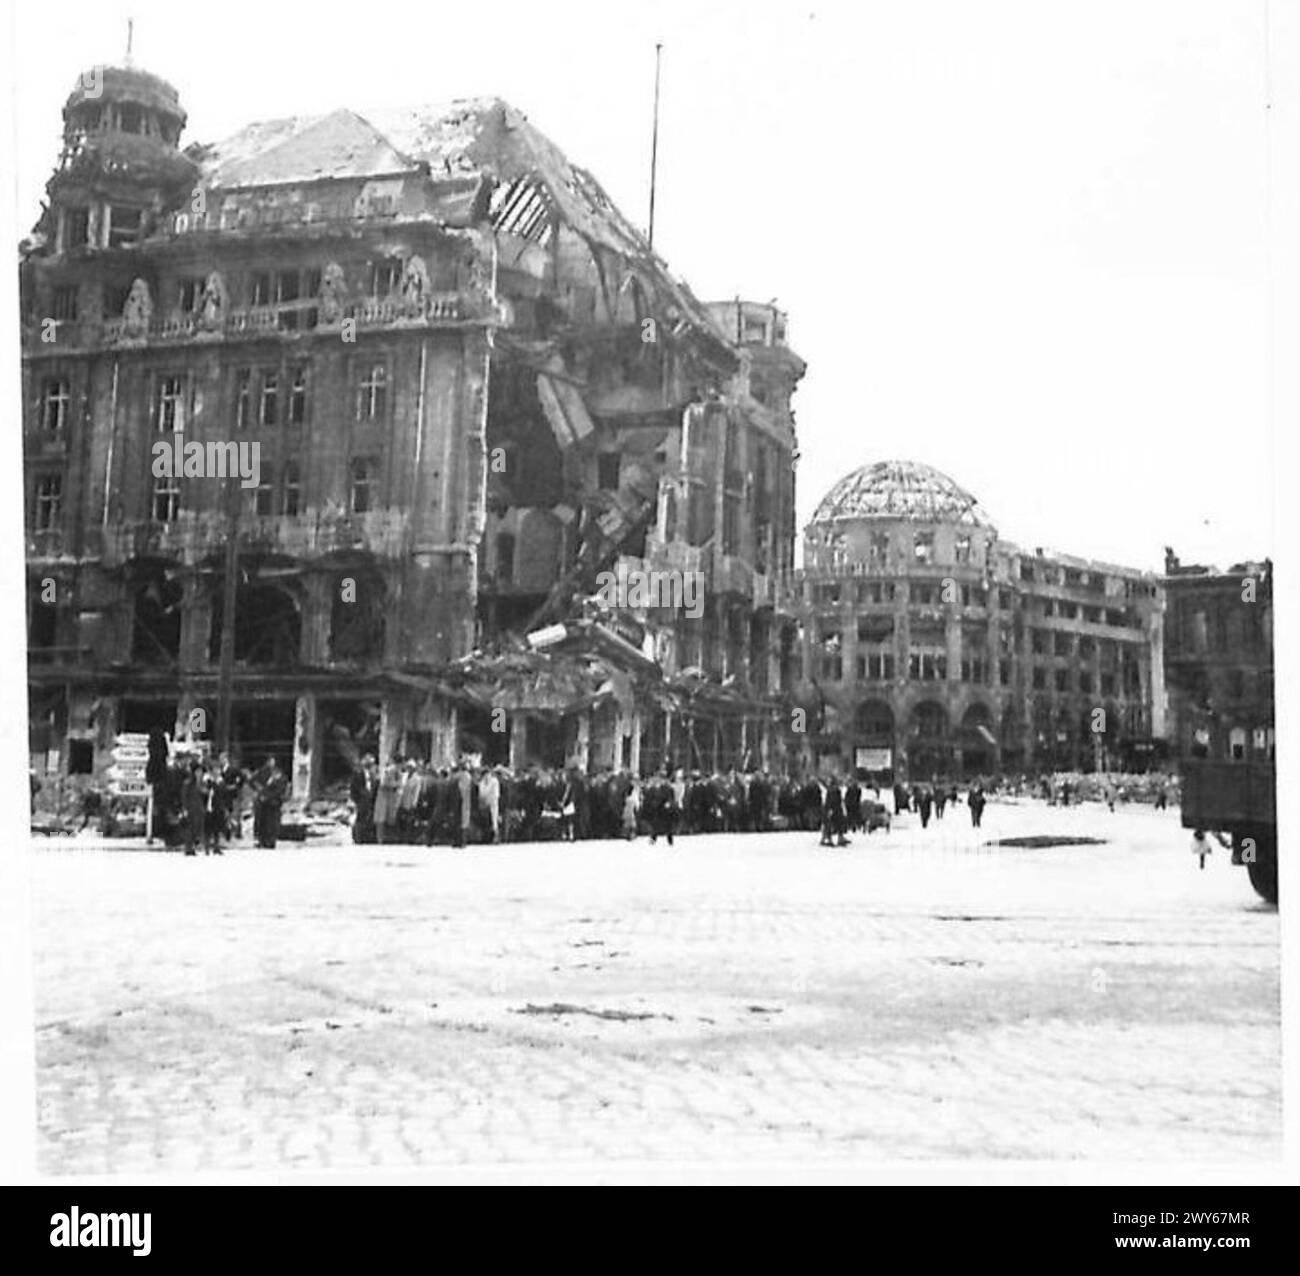 BOMBENSCHADEN IN BERLIN BESEITIGEN - nach ihrer täglichen Arbeit warten die Berliner in langen Warteschlangen Stunden auf die wenigen Busse. Britische Armee, 21. Armeegruppe Stockfoto